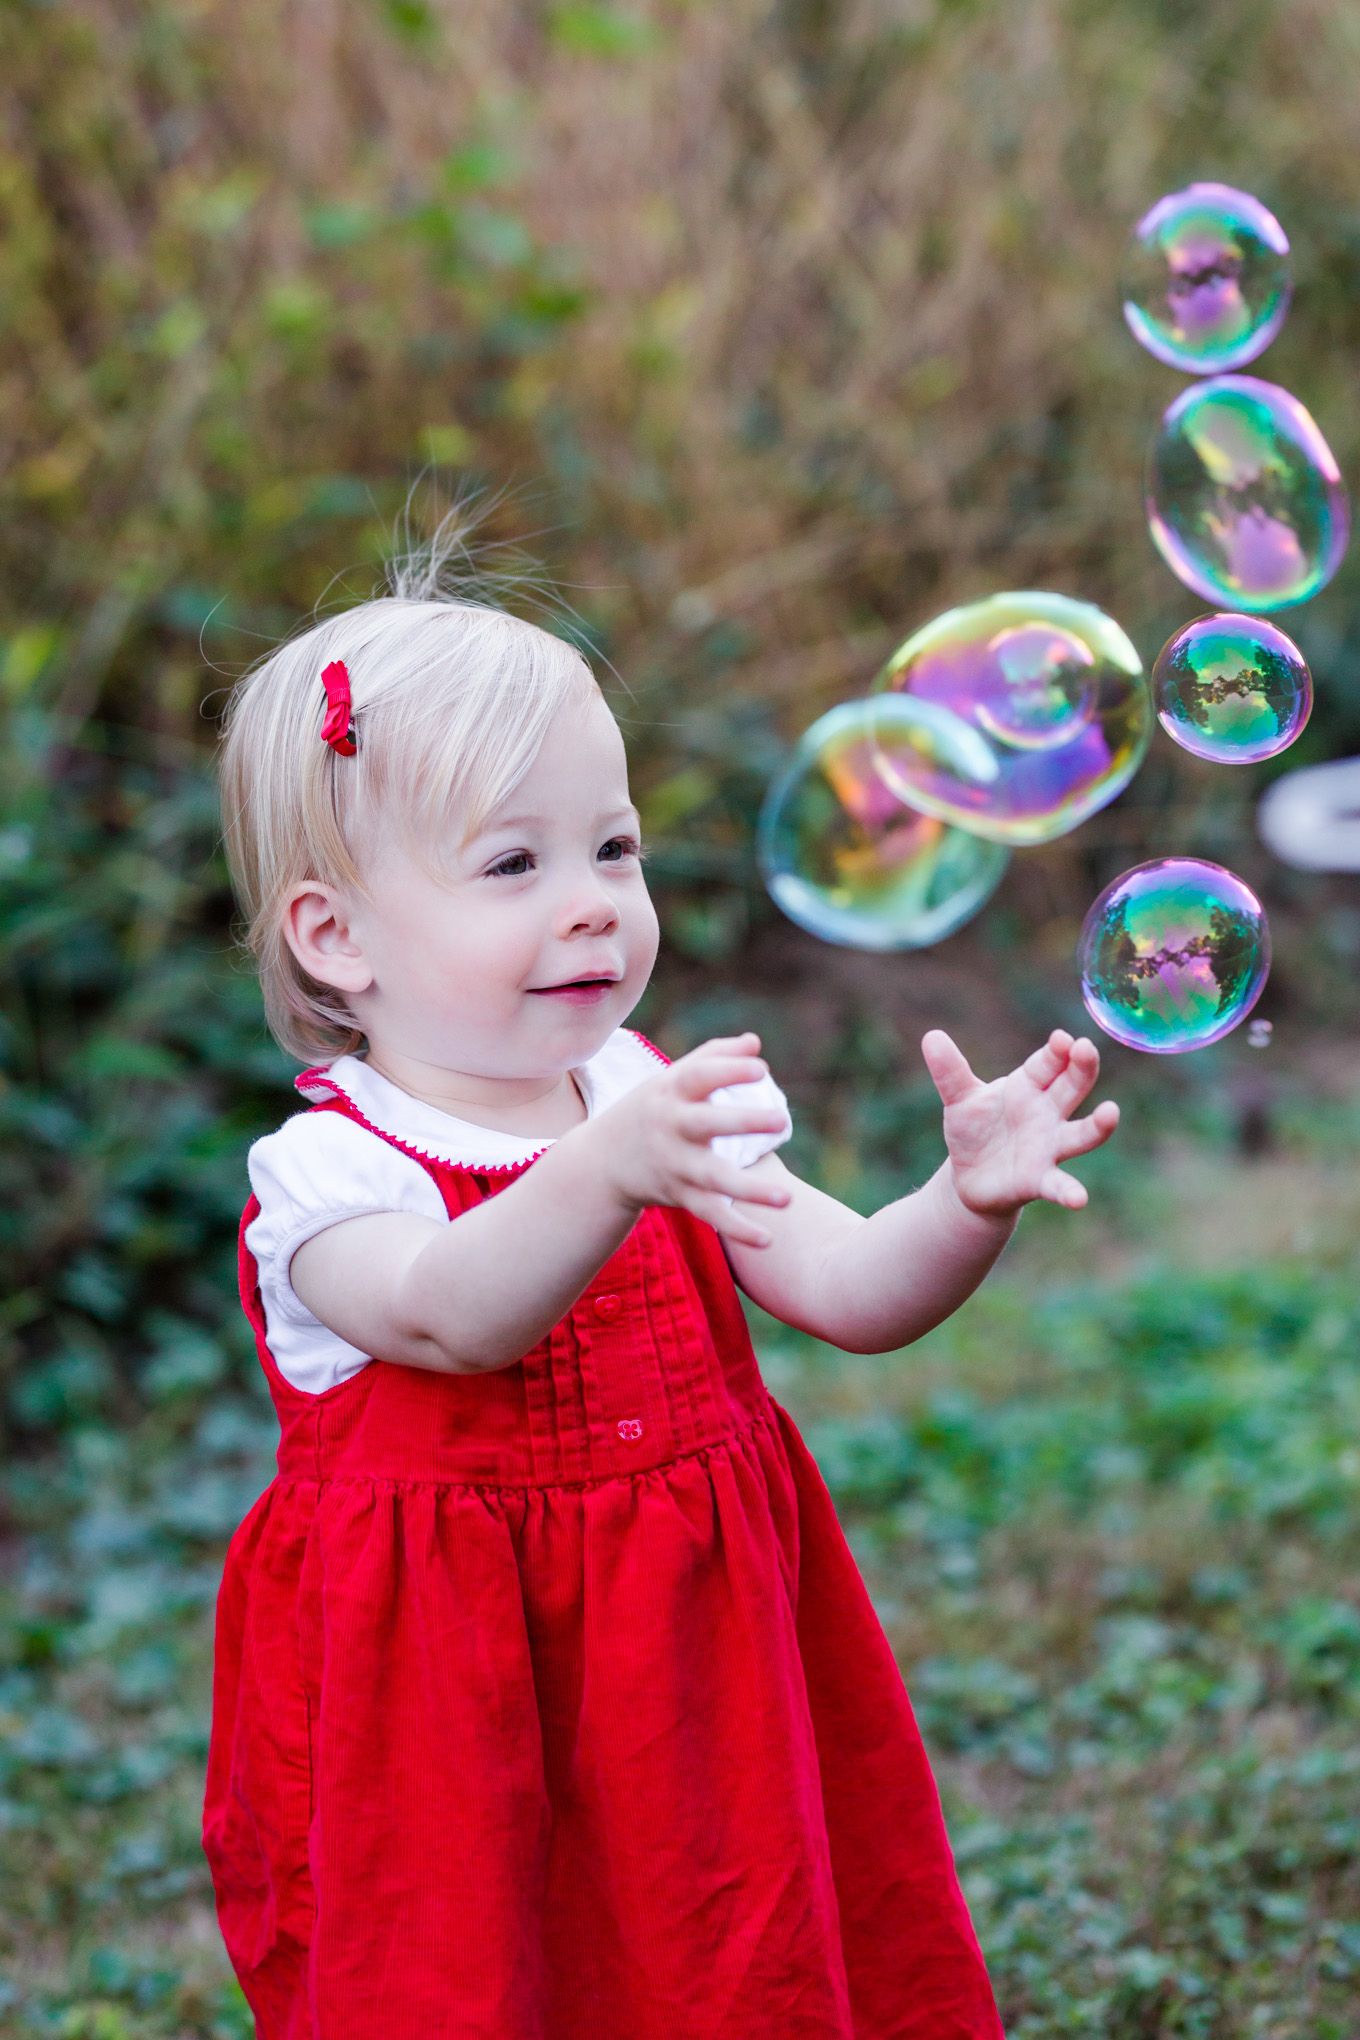 October family photos, family photos, family of three, toddler, baby girl, Arlington, northern Virginia, bubbles